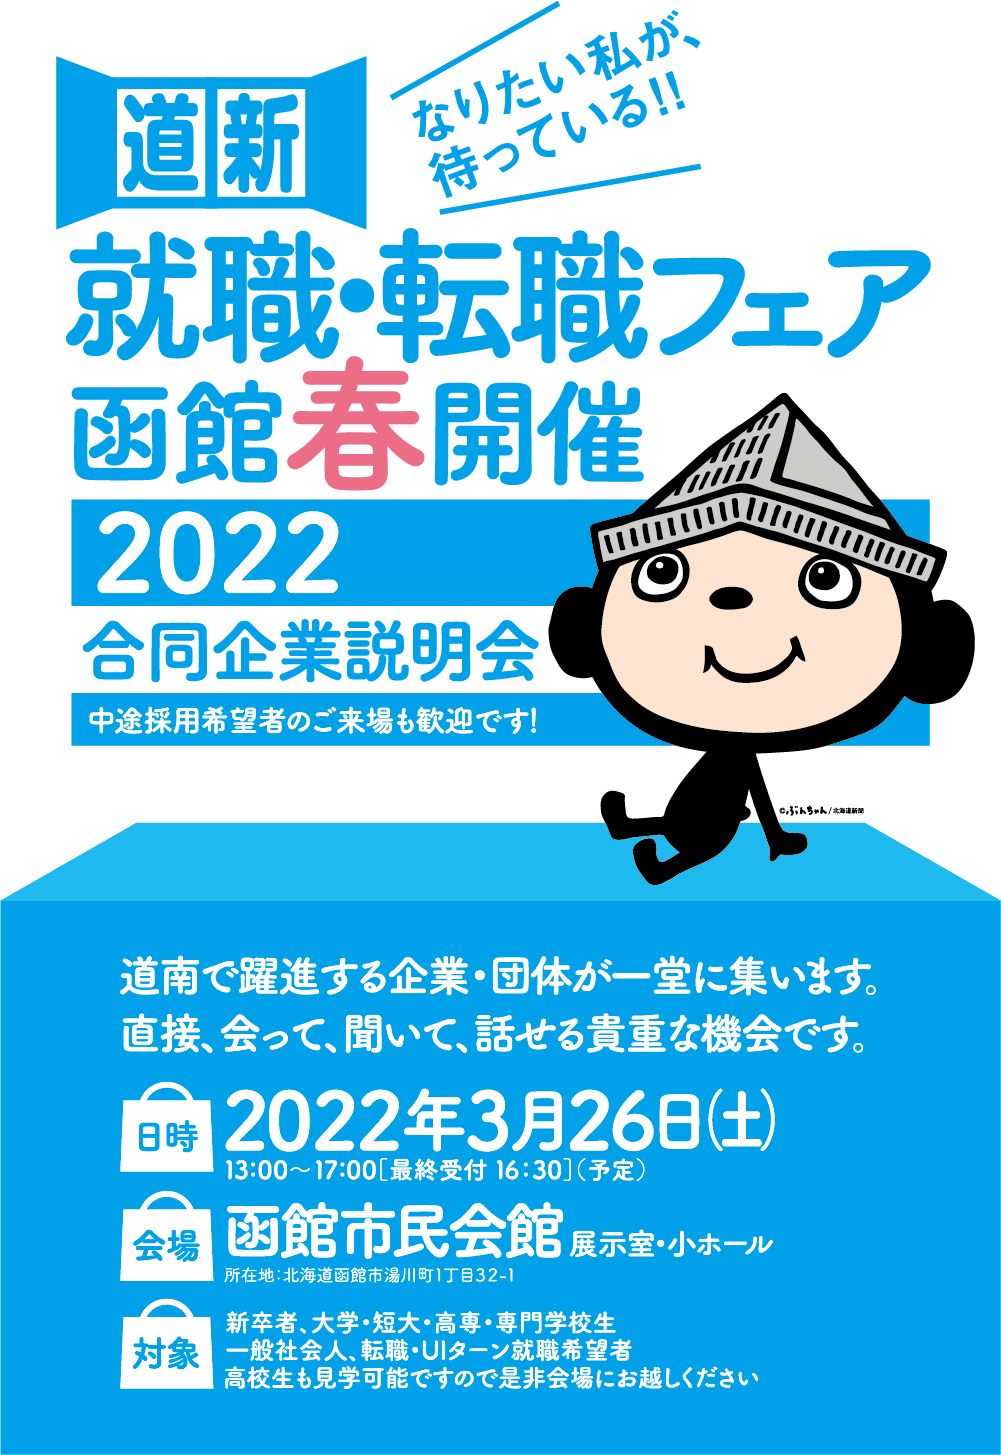 就活・転職フェア-函館春開催2022-合同企業説明会